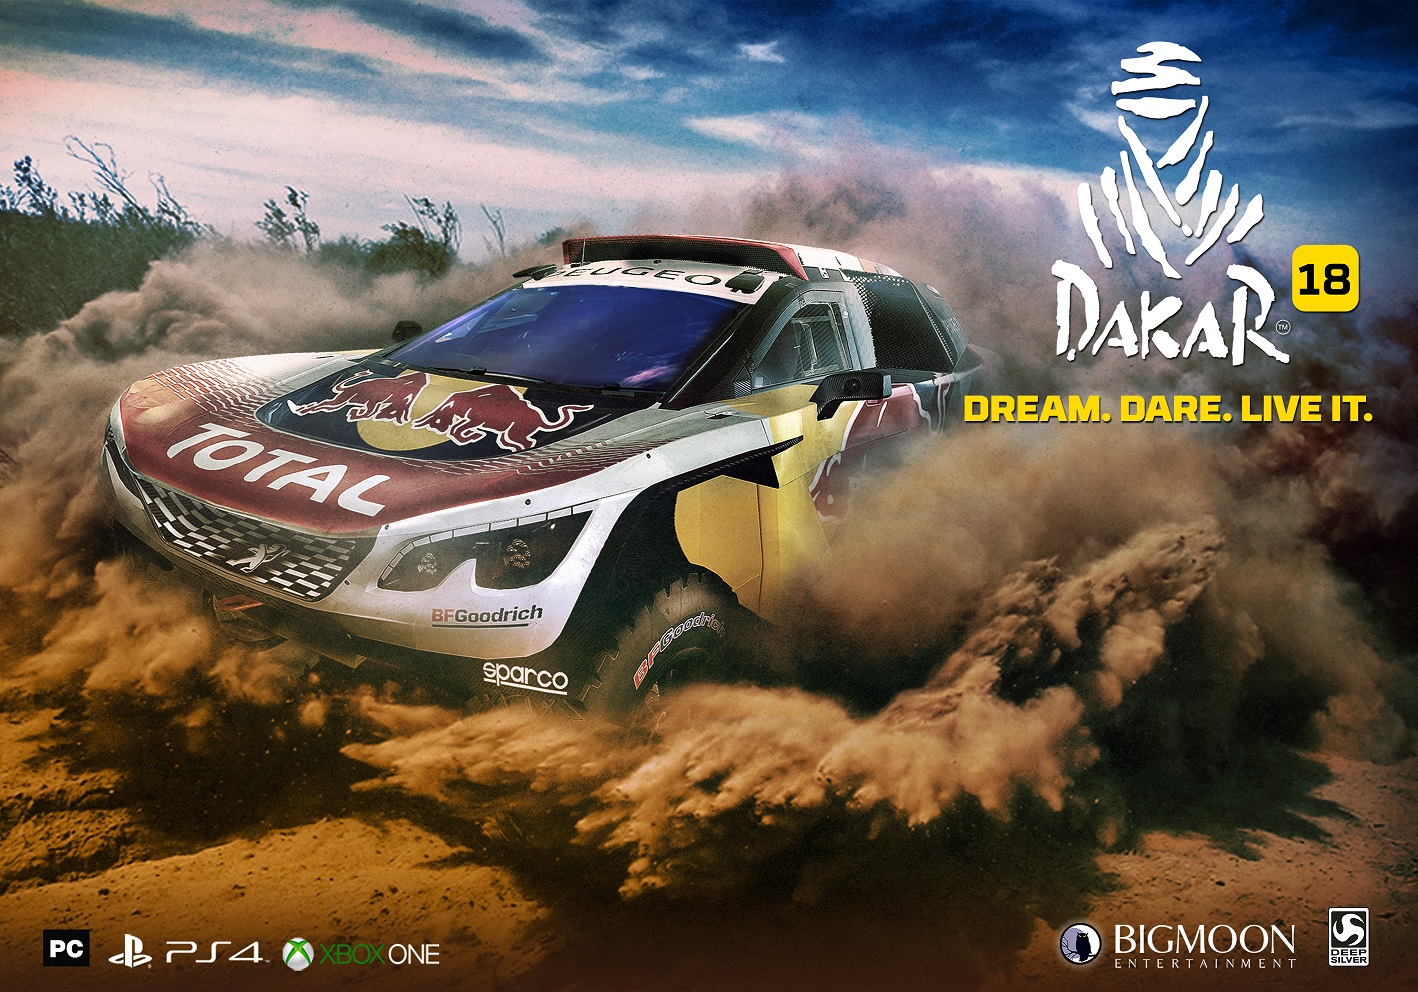 Dakar 18 se lanzará finalmente el 28 de septiembre y estrena nuevo tráiler centrado en sus características